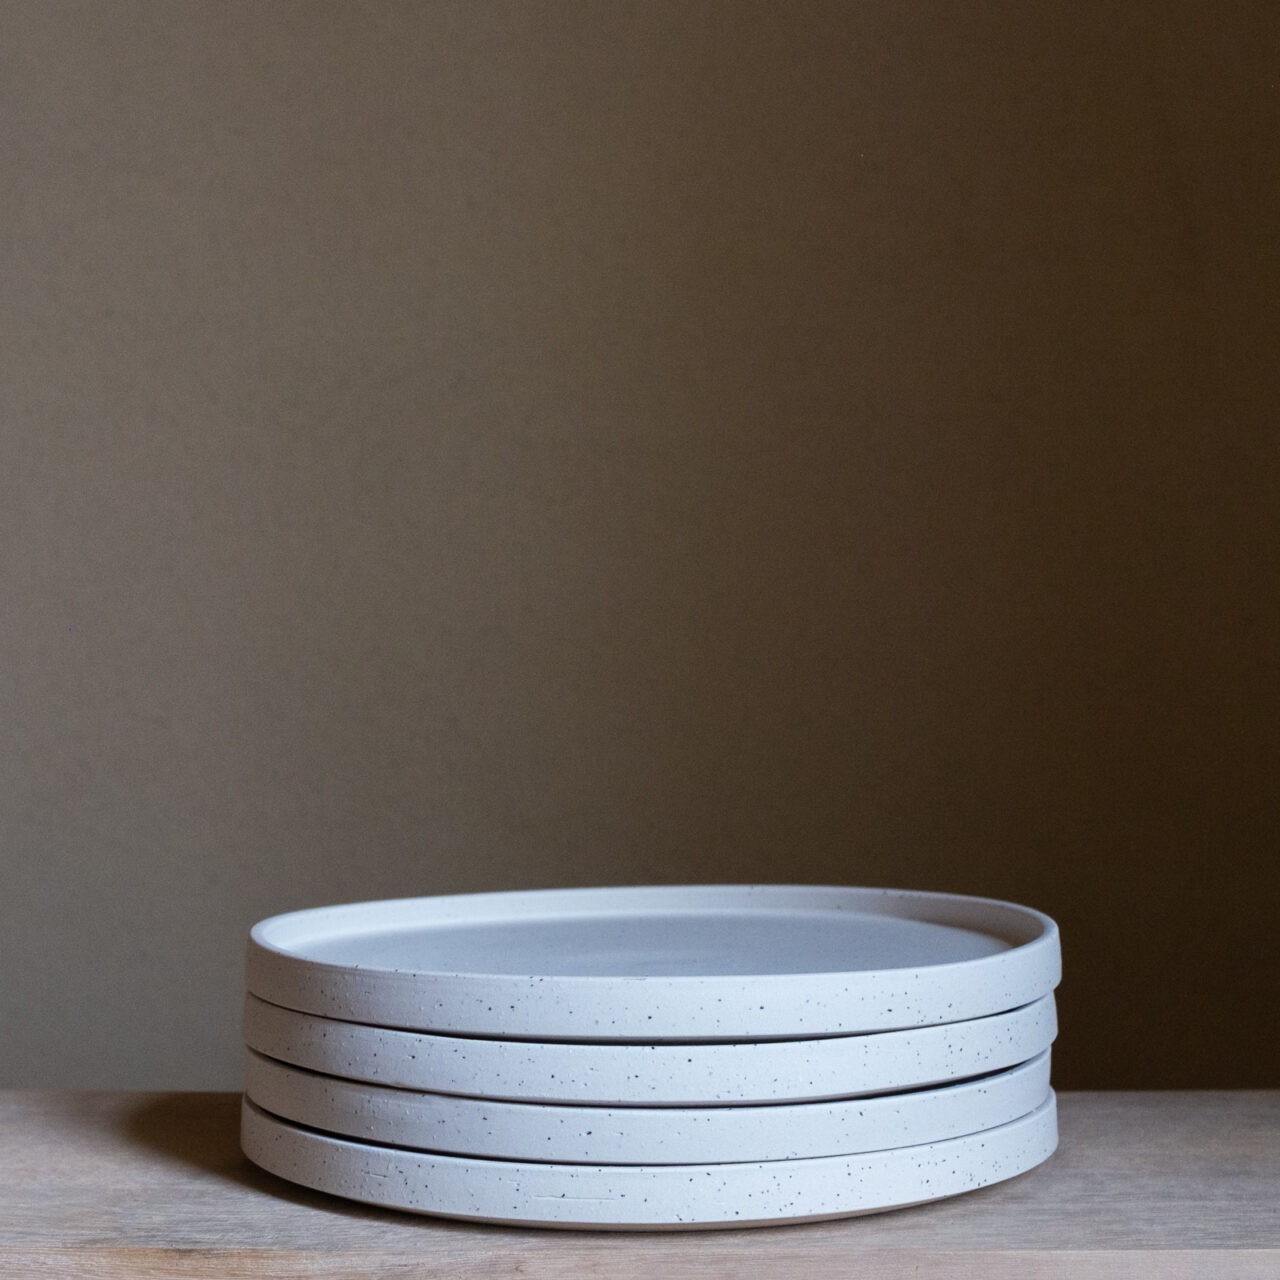 Set of Four Medium Porcelain Plates with Ljubljana Sands